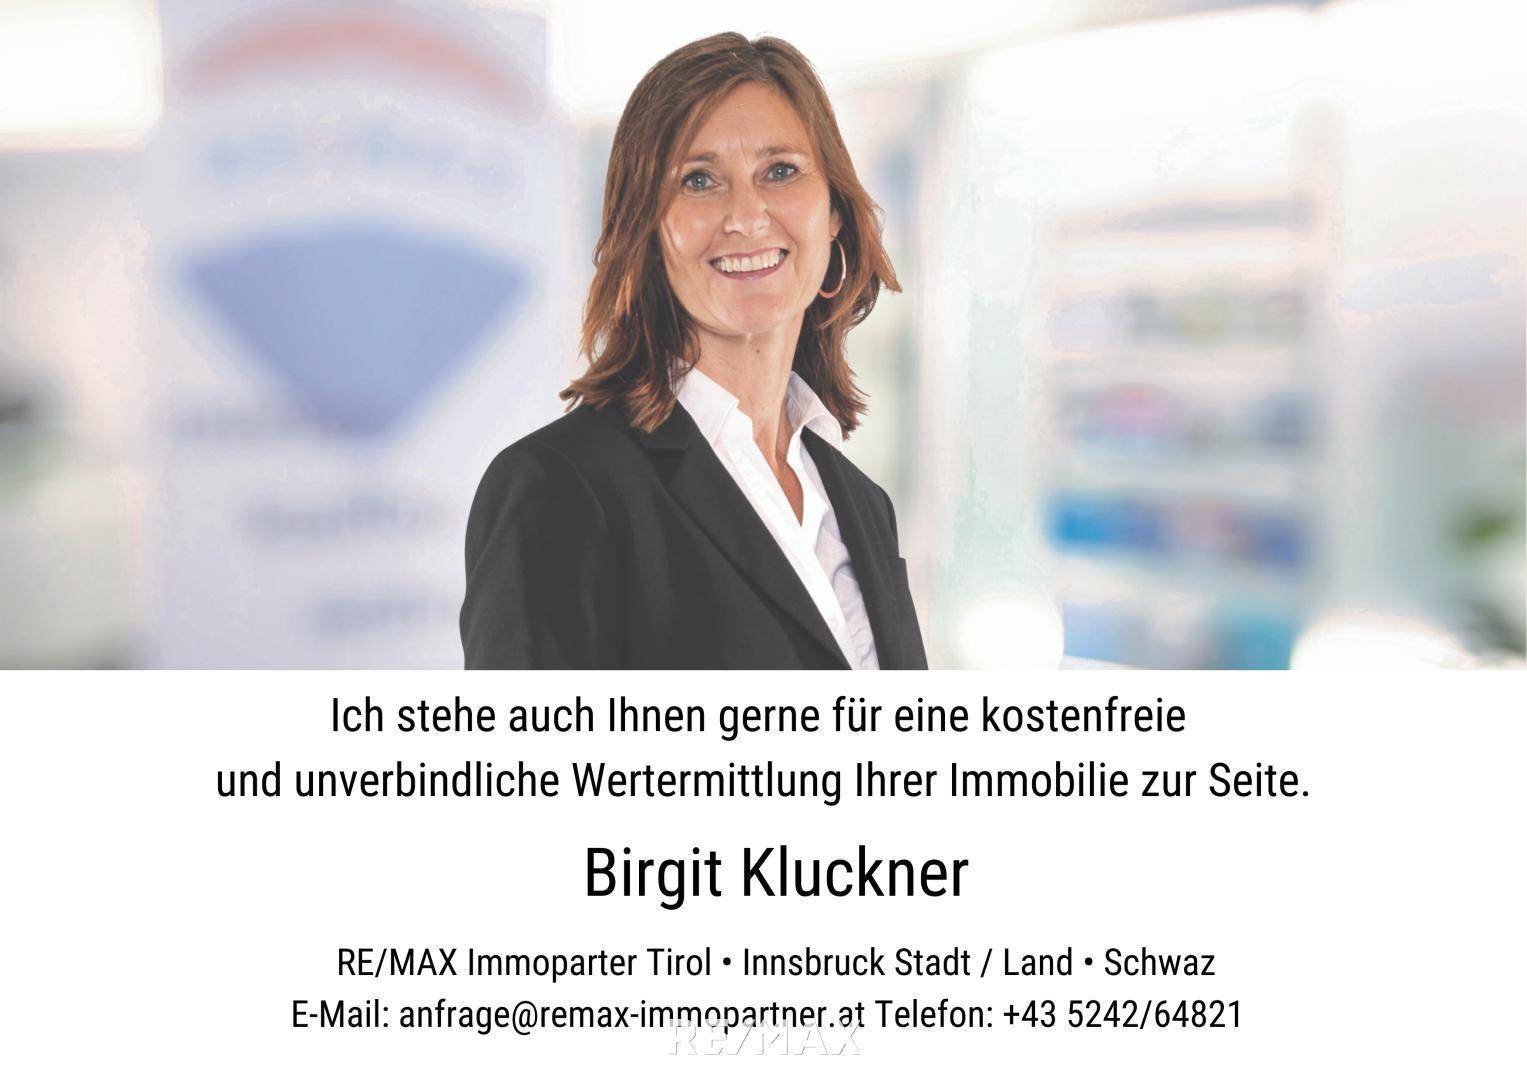 Birgit Kluckner #remaximmopartner